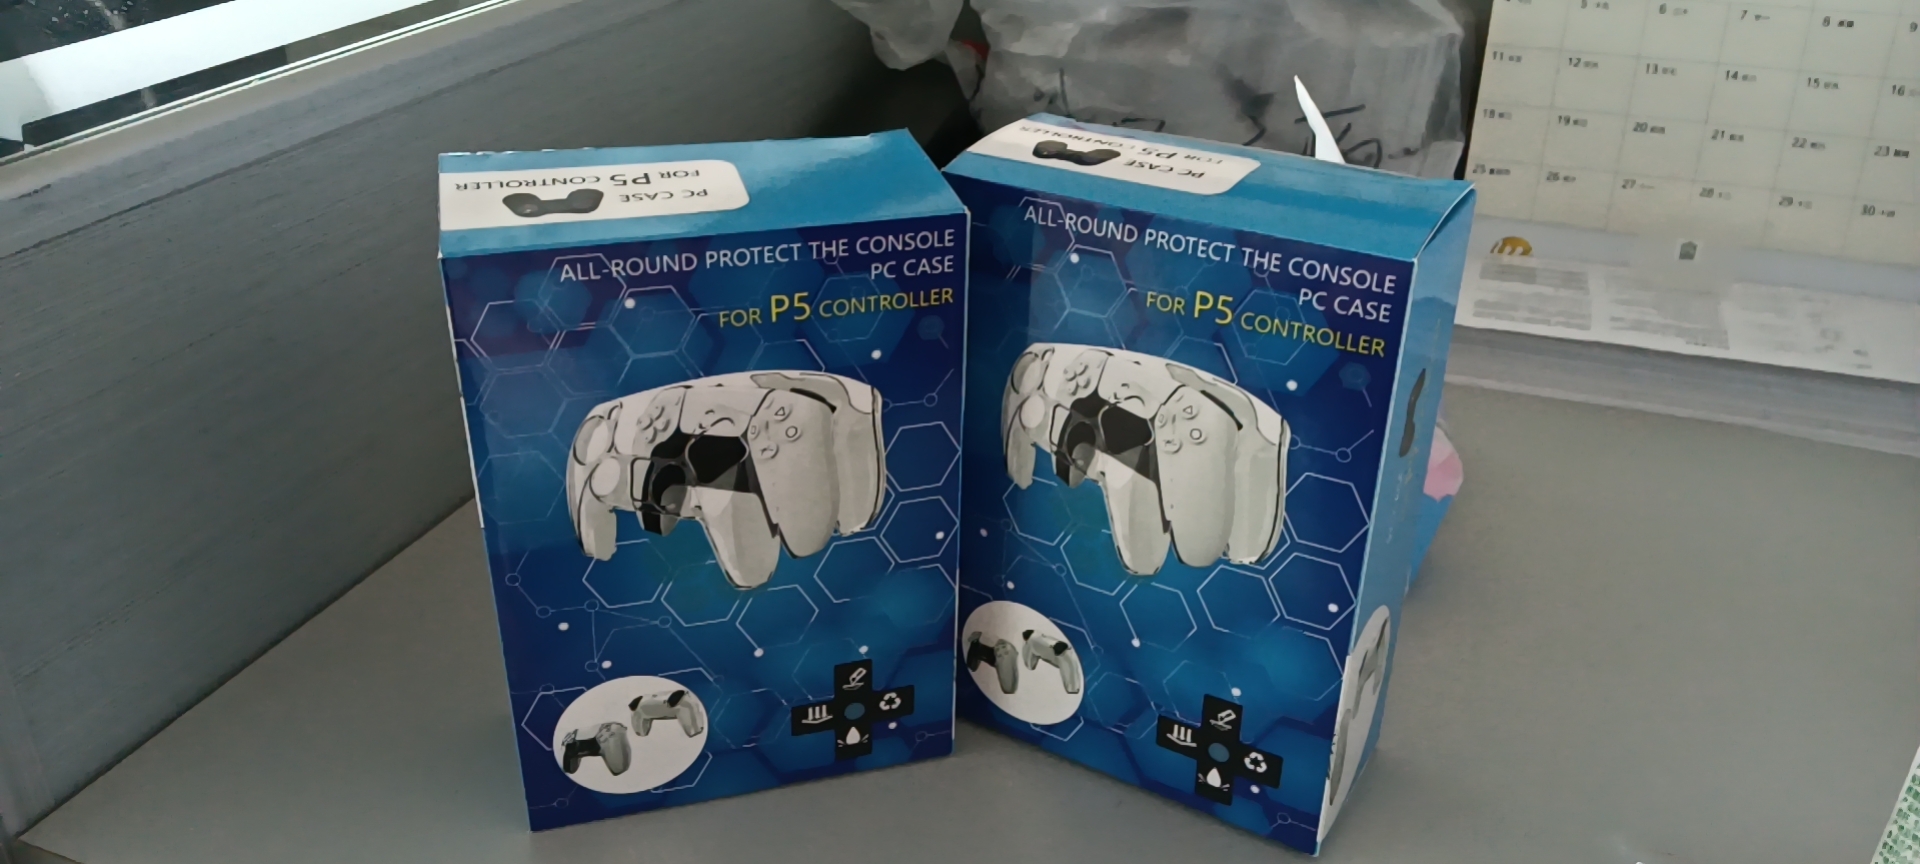 PS5游戏手柄彩盒价格  PS5游戏手柄彩盒供应商